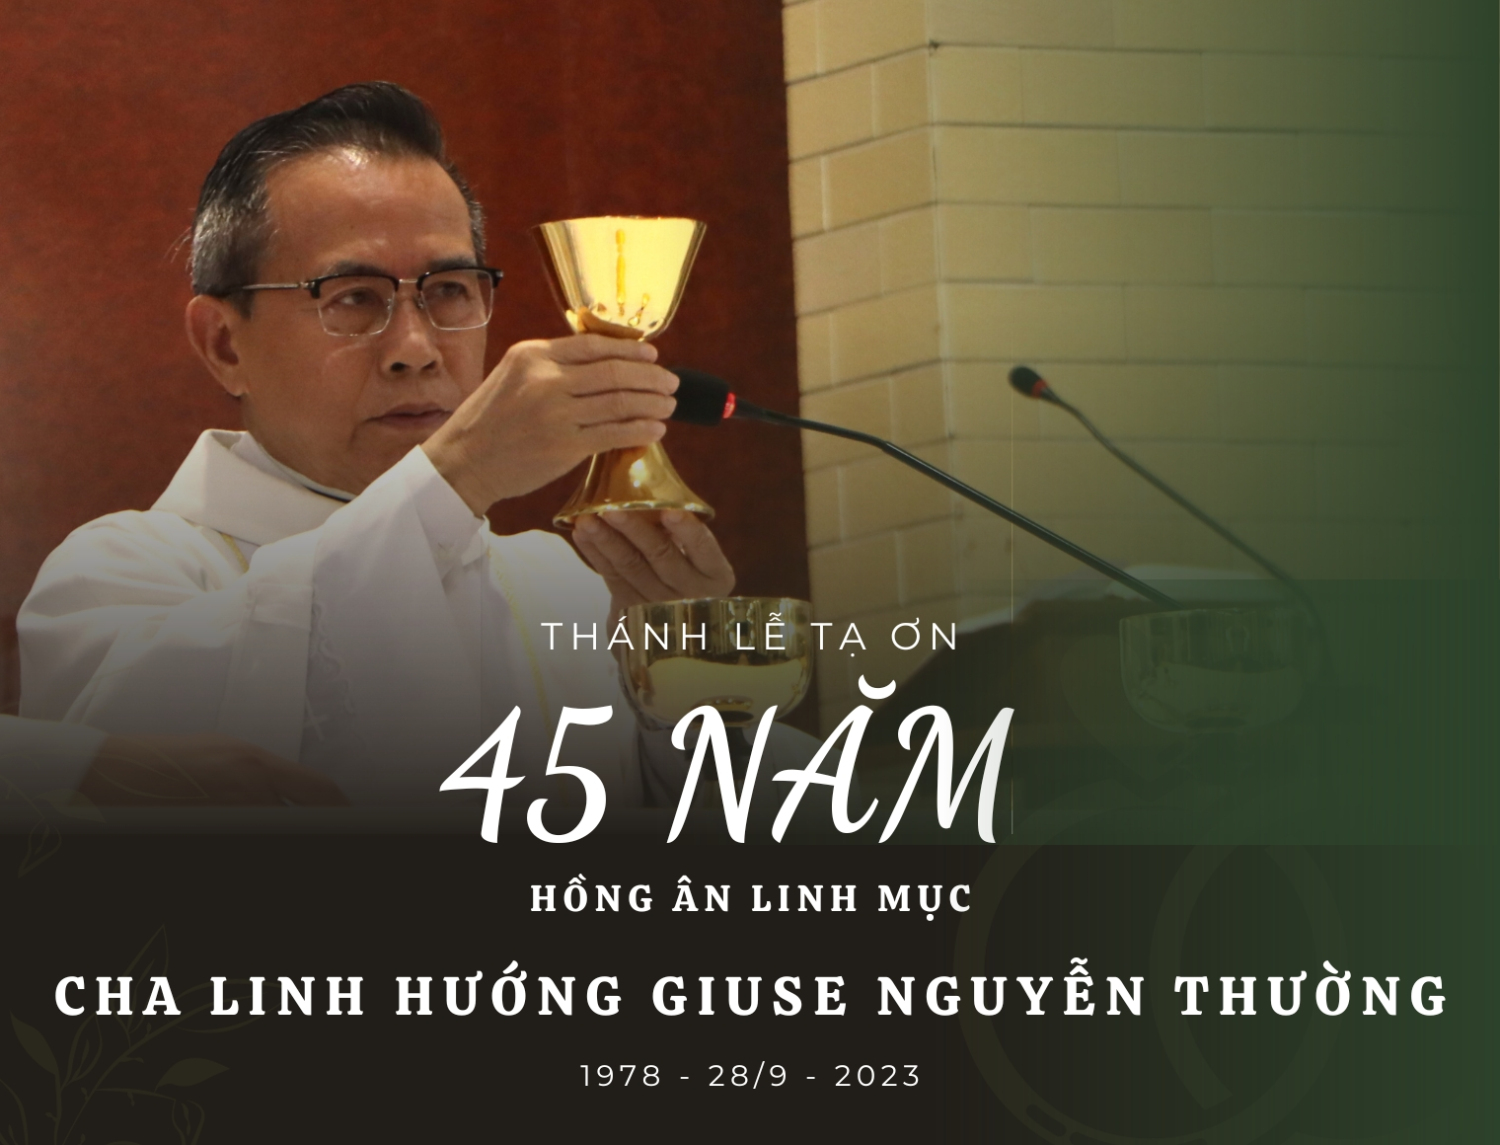 Kỷ niệm 45 năm hồng ân Linh mục Cha Linh hướng Giuse Nguyễn Thường